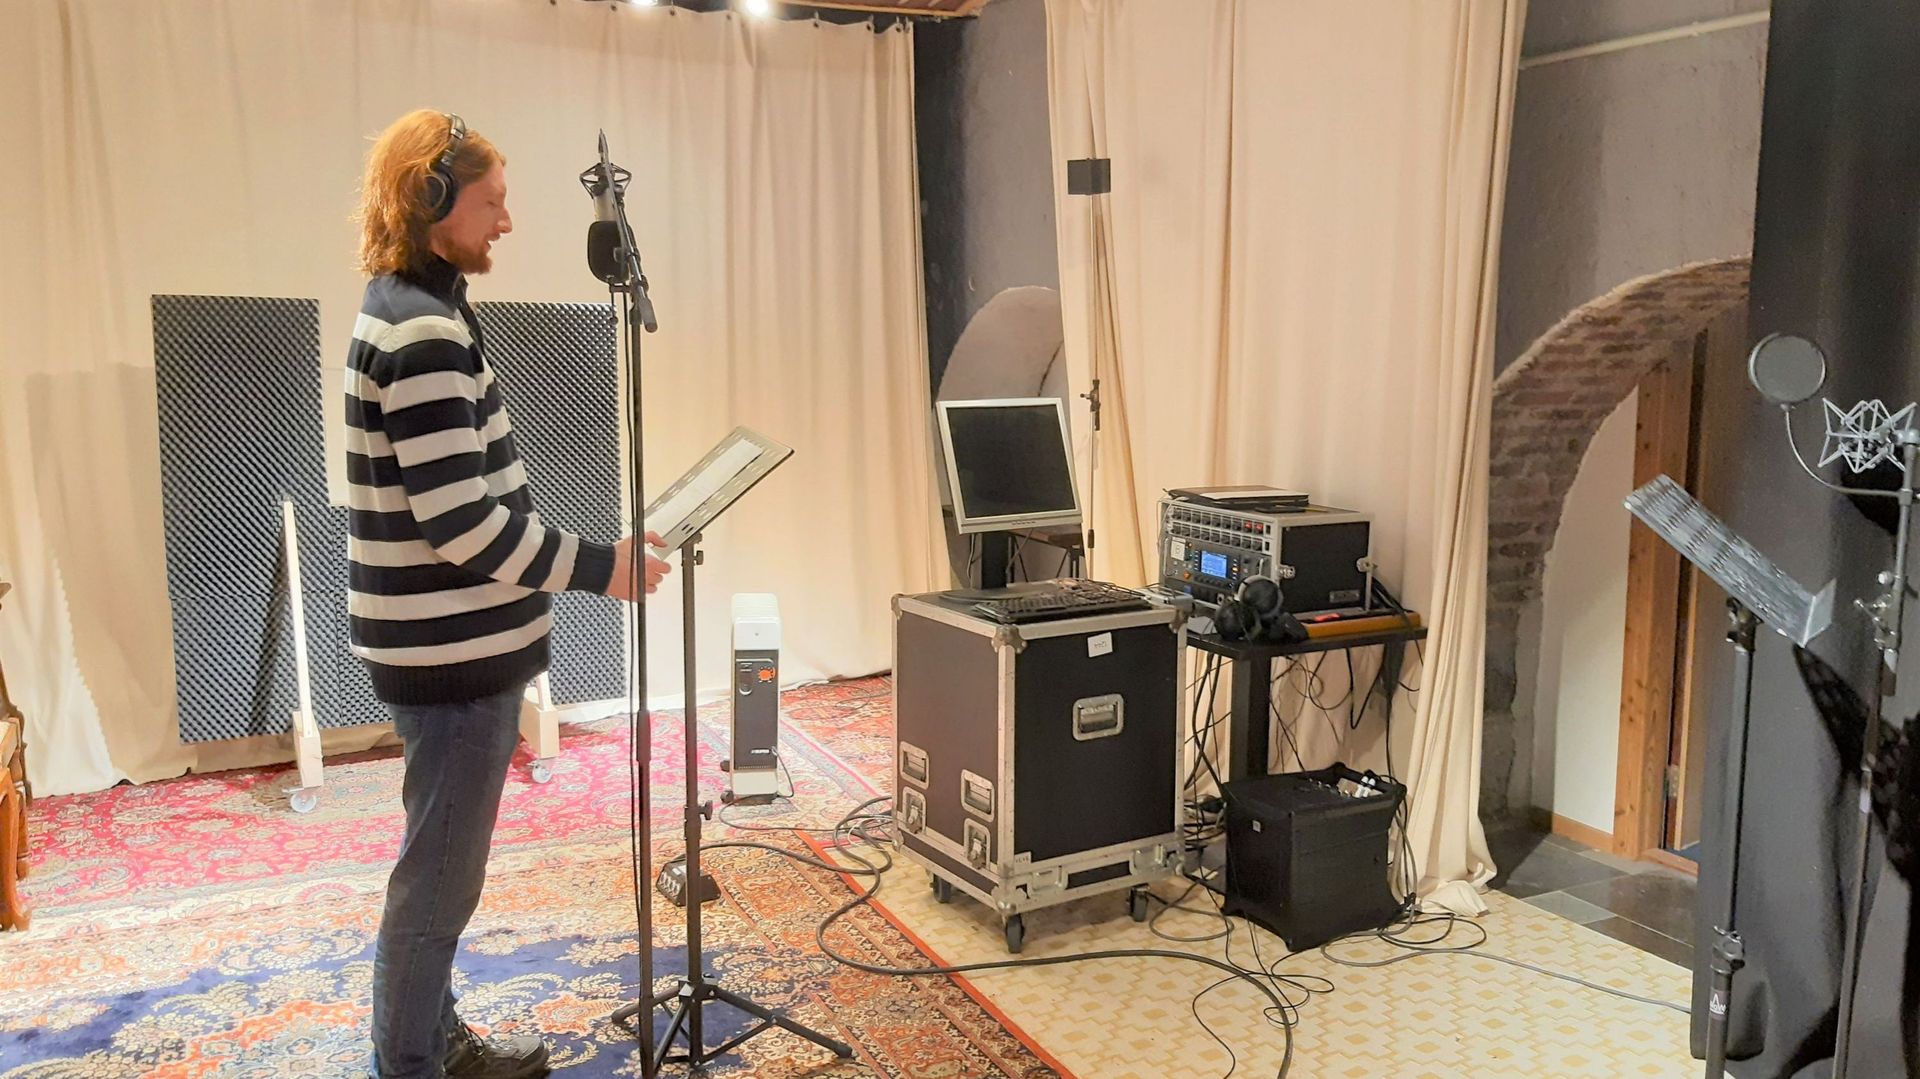 Deux studios d’enregistrement reliés à une régie moderne permettent aux artistes de venir soit répéter soit enregistrer leurs créations.